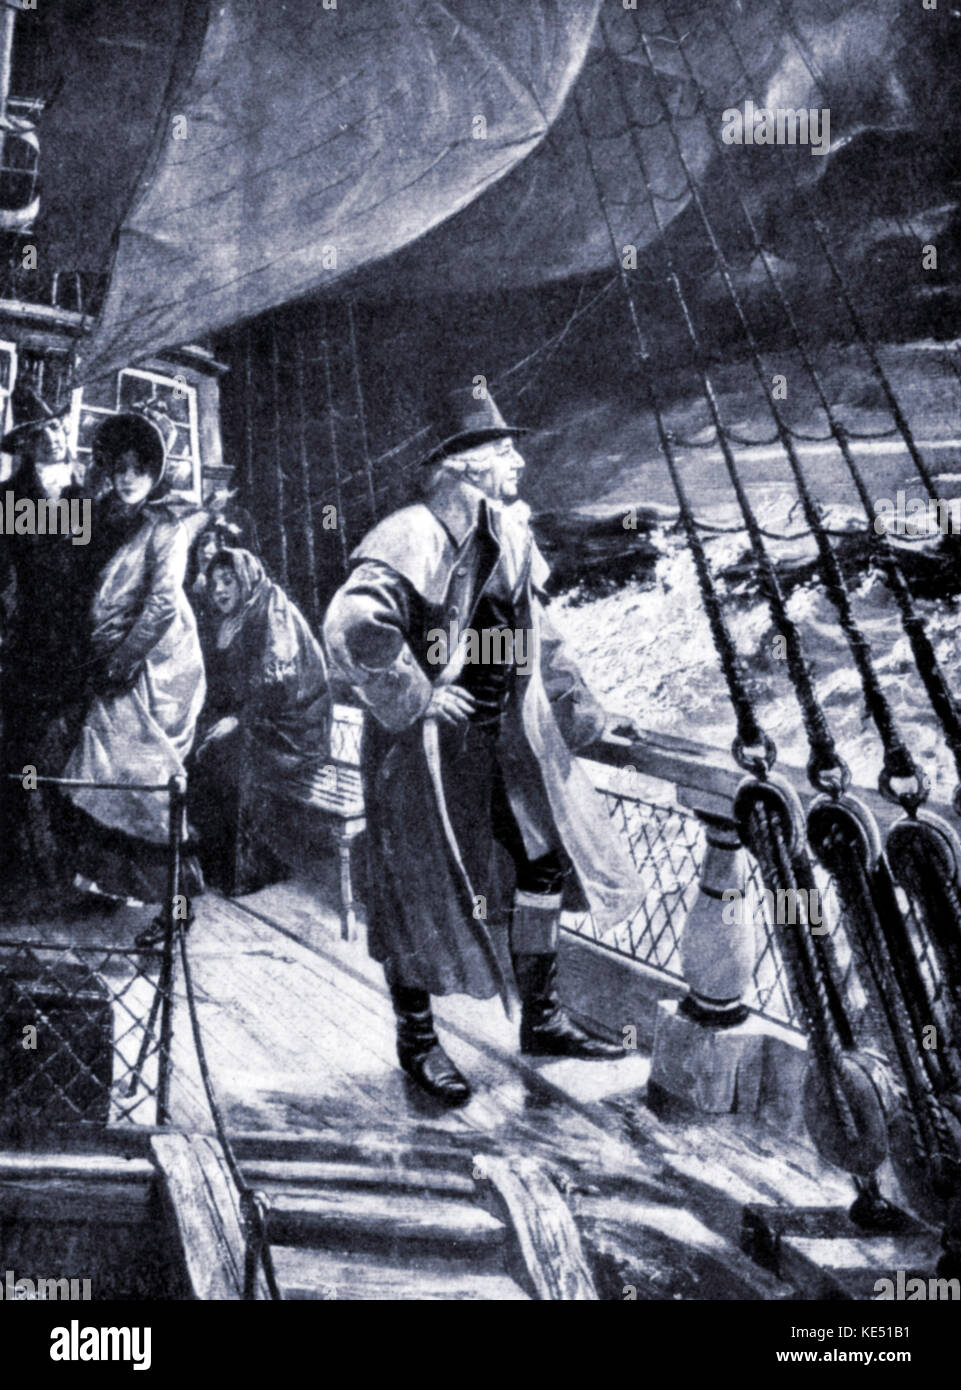 Franz Joseph Haydn catturati in una tempesta durante il suo attraversamento di mare a Londra , Inghilterra. Il compositore austriaco, 31 marzo 1732 - 31 maggio 1809. Dipinto di Edouard Hamman (1819-1888). Foto Stock